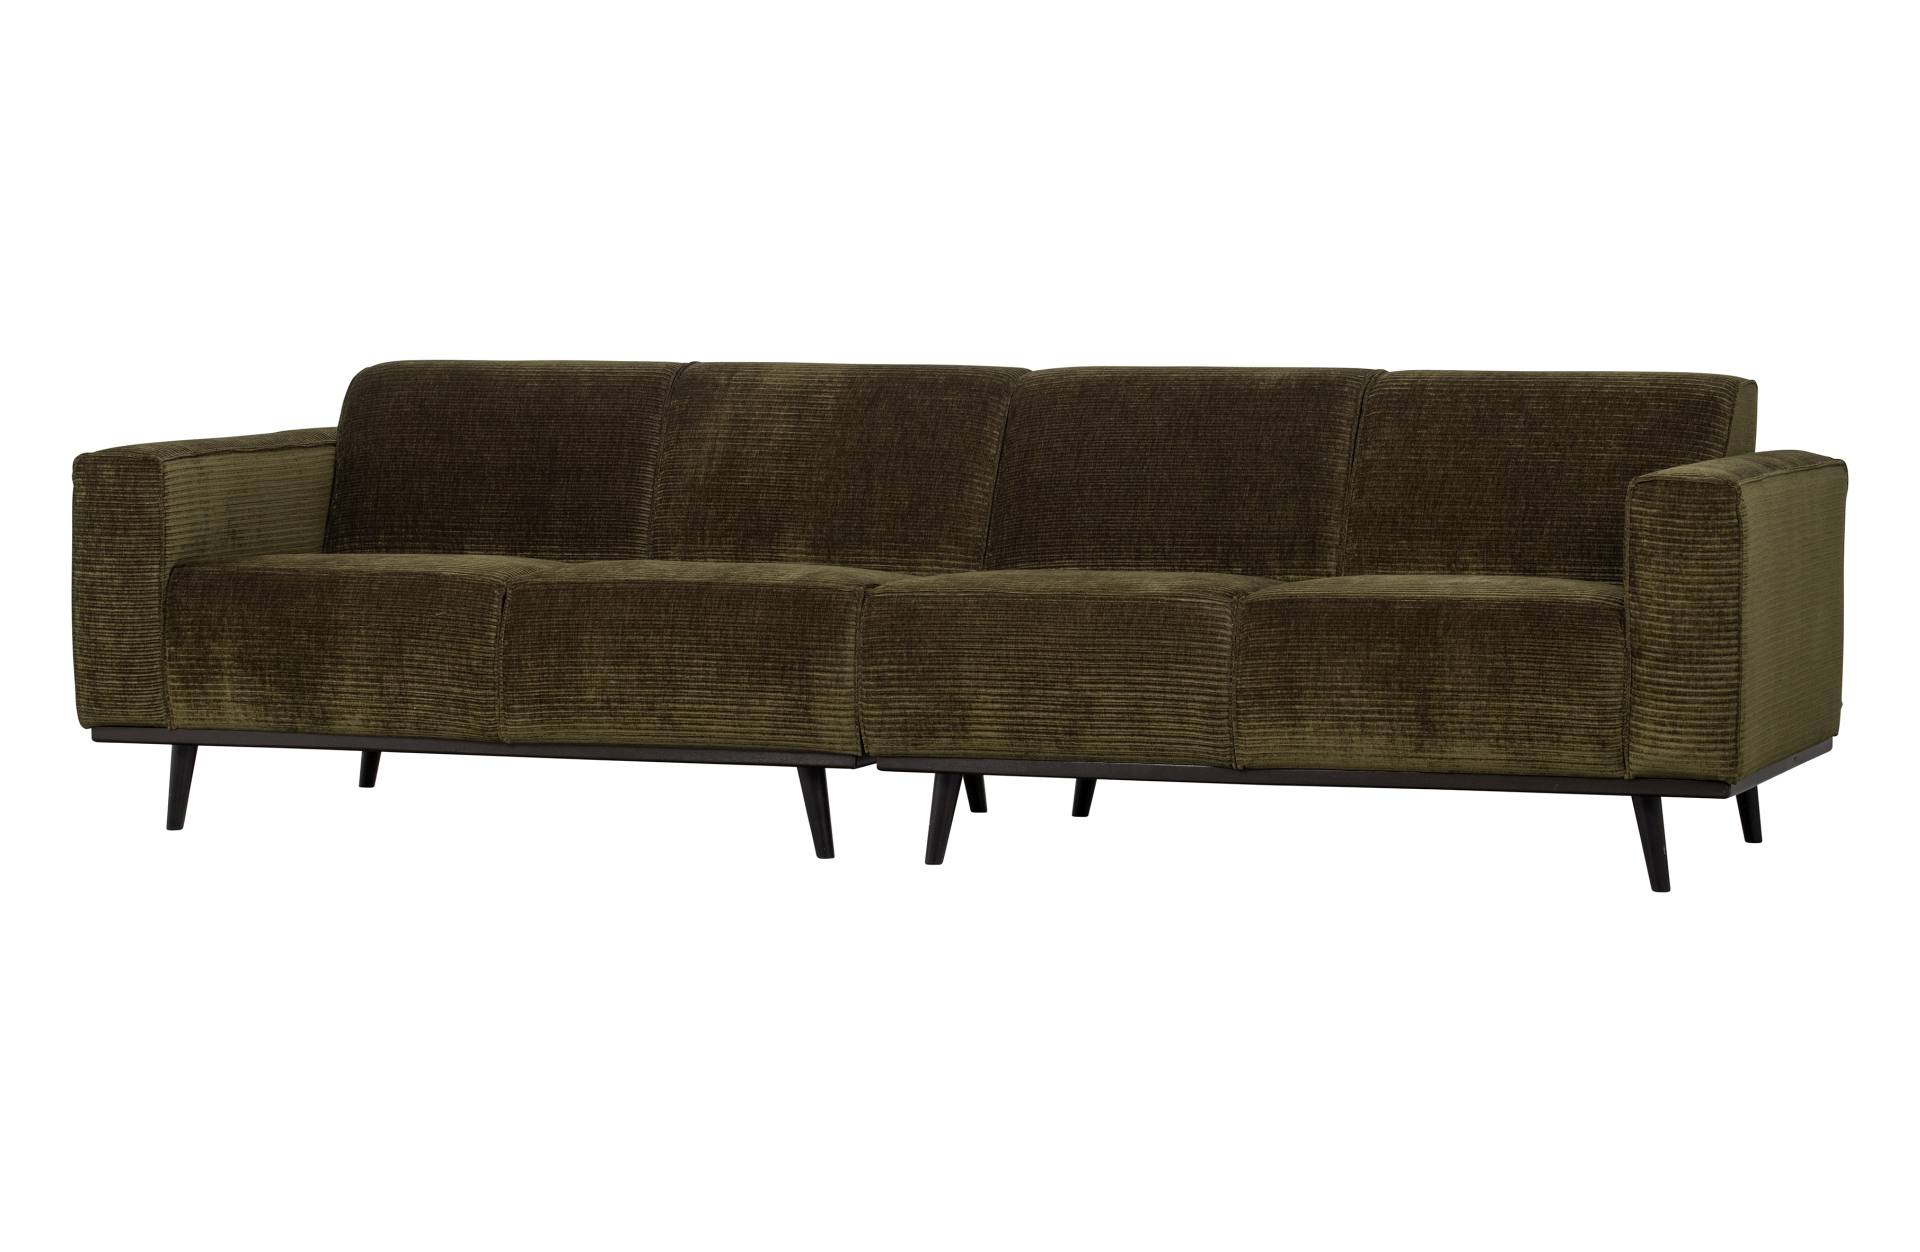 Das Sofa Statement überzeugt mit seinem modernen Design. Gefertigt wurde es aus gewebten Jacquard, welches einen Olive Farbton besitzen. Das Gestell ist aus Birkenholz und hat eine schwarze Farbe. Das Sofa hat eine Breite von 280 cm.